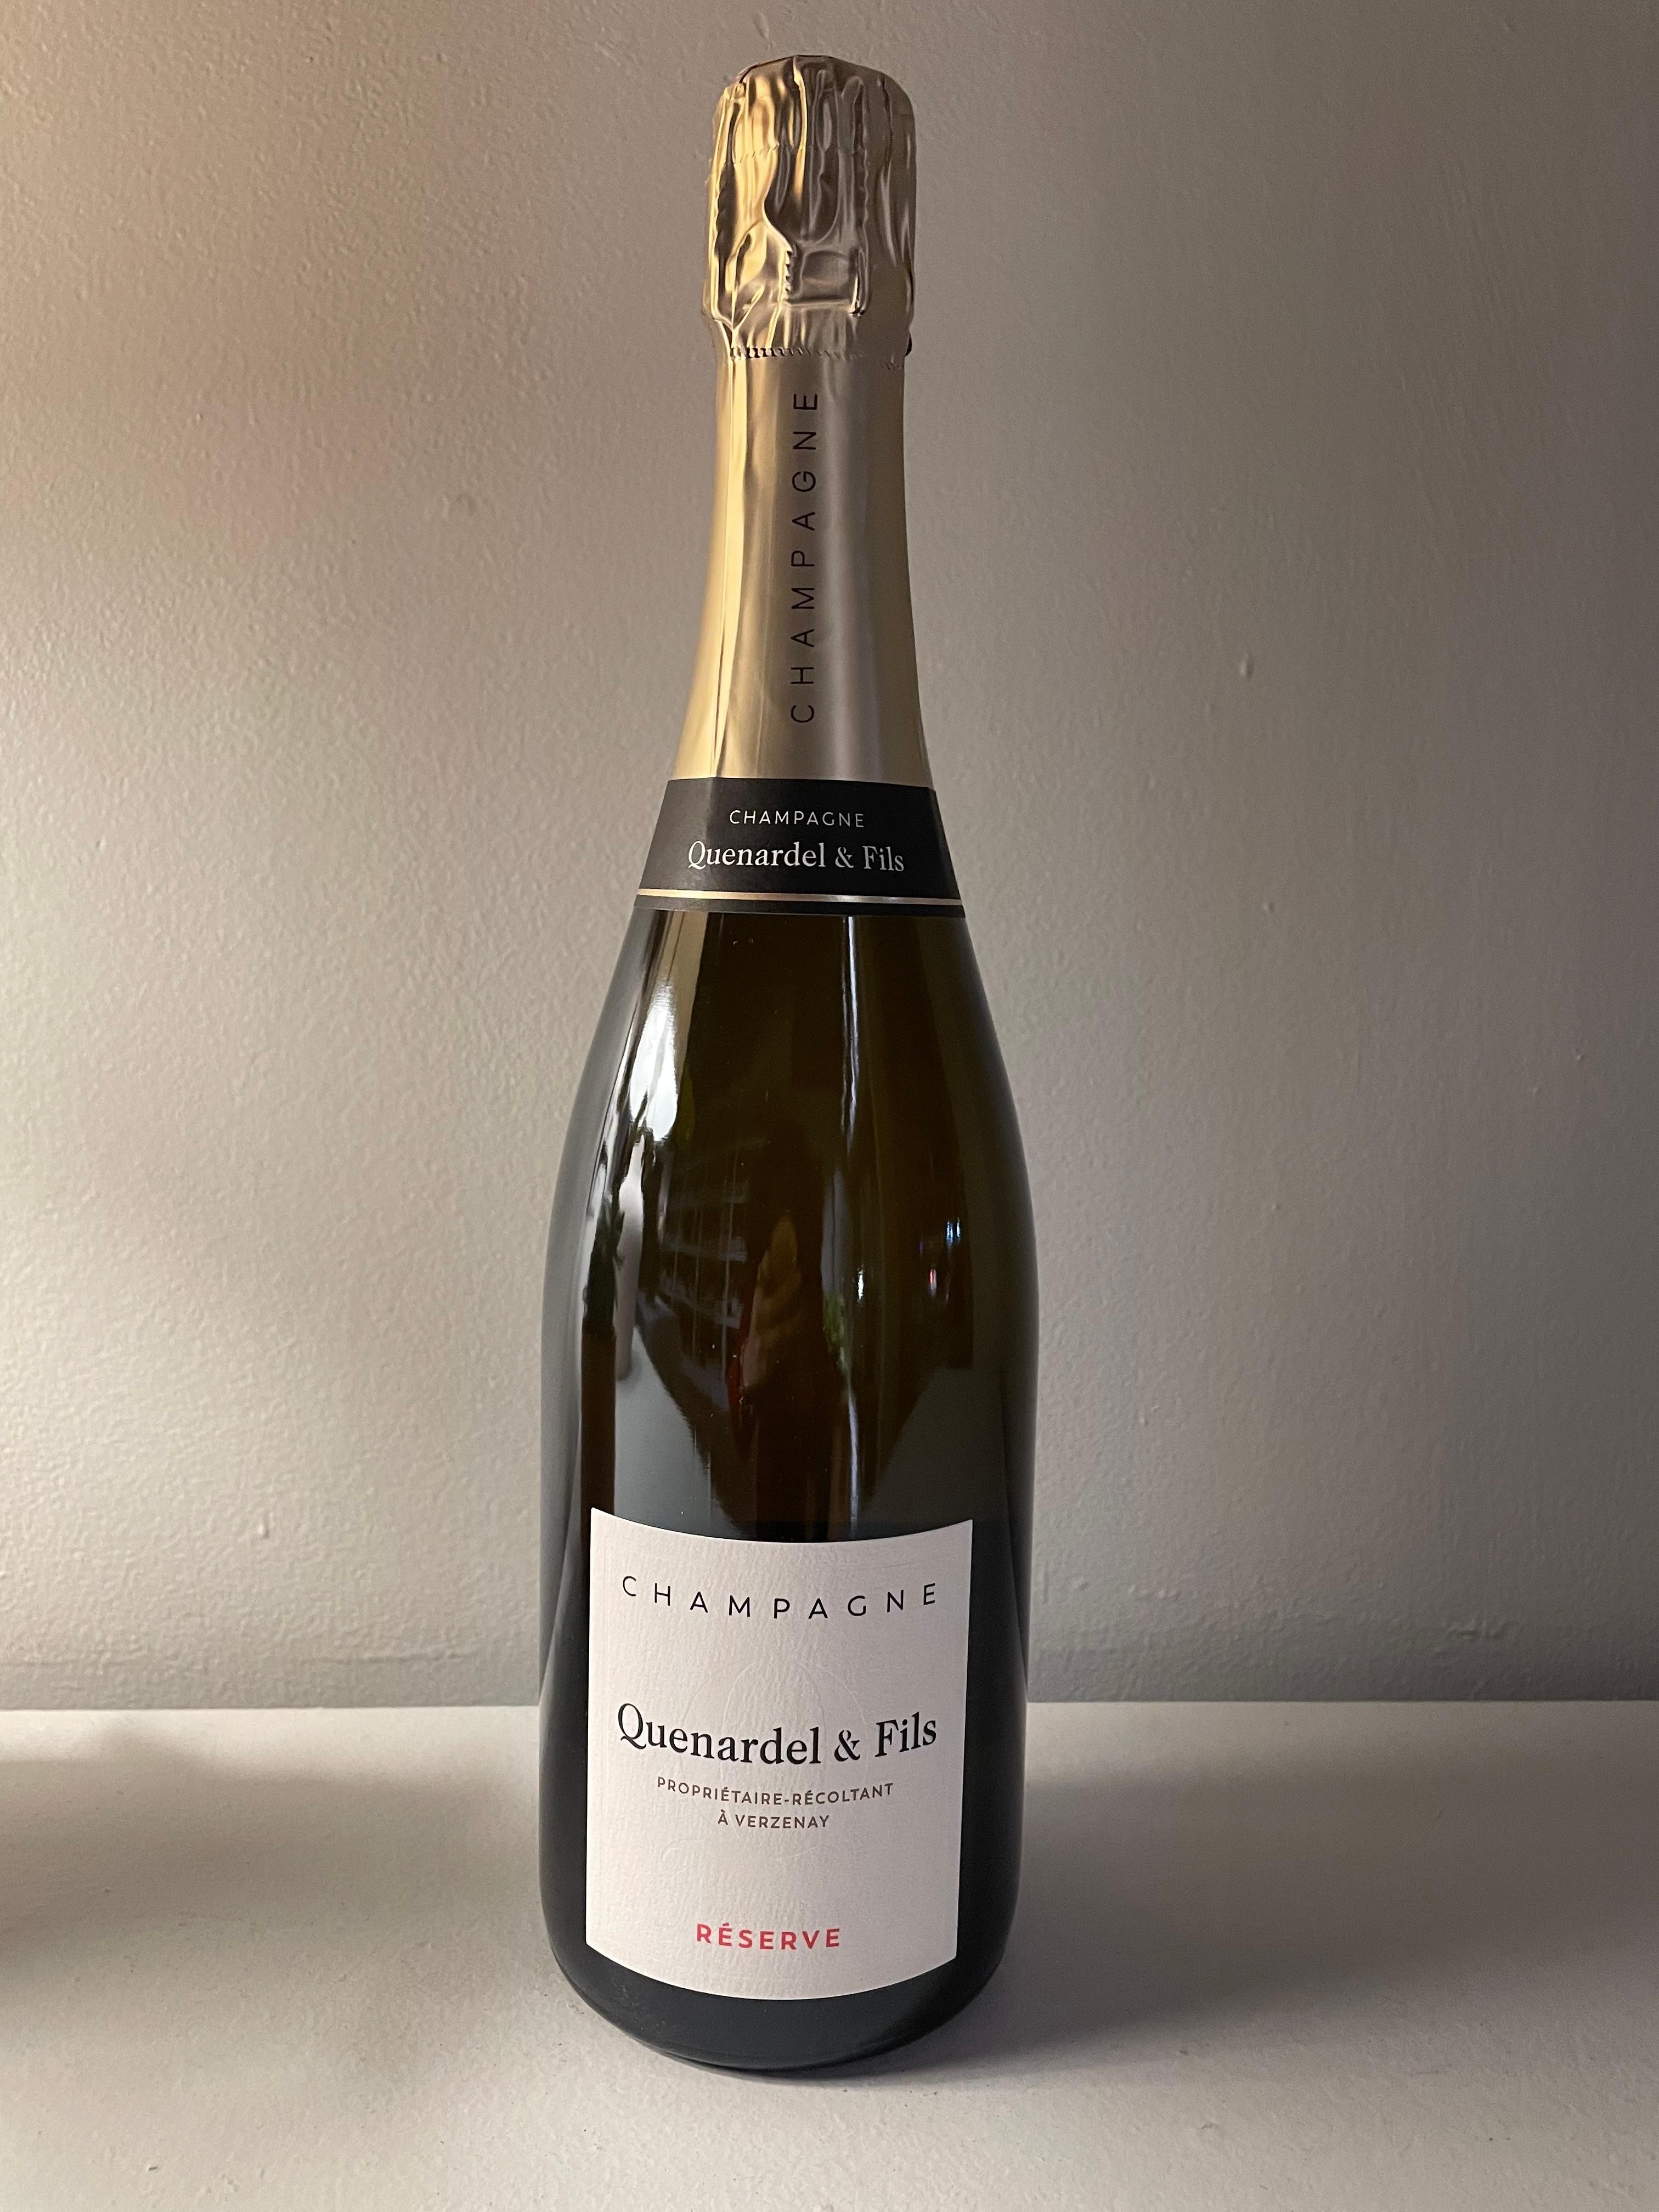 NV Champagne Brut "Reserve", Quenardel & Fils